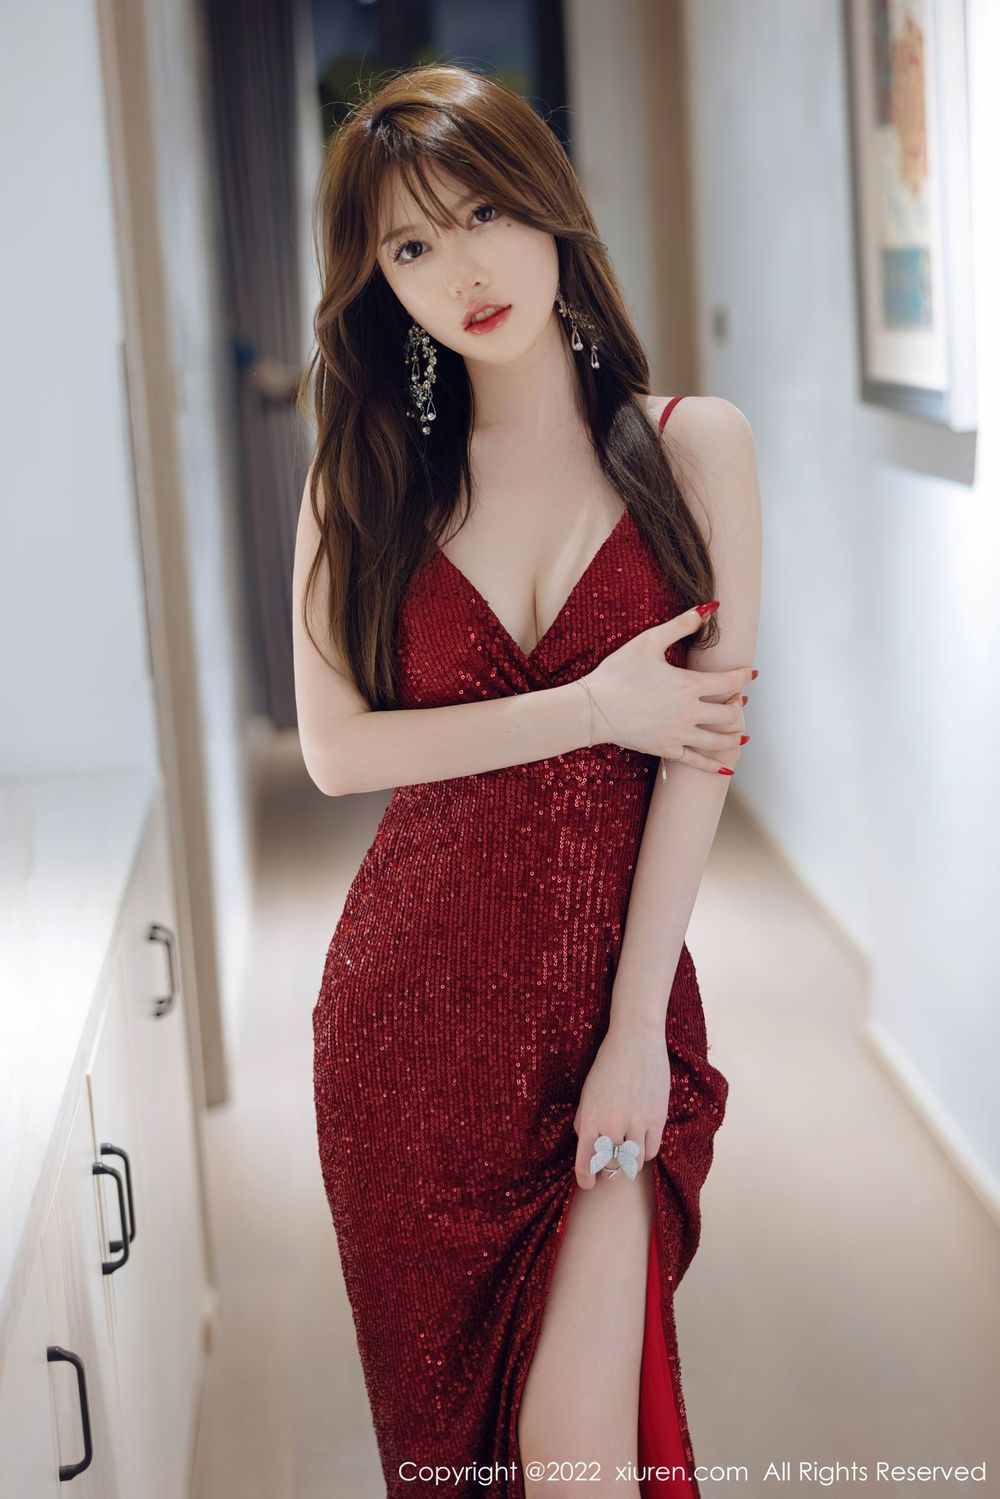 美女模特美桃酱 - 红色长裙+丝袜系列性感写真